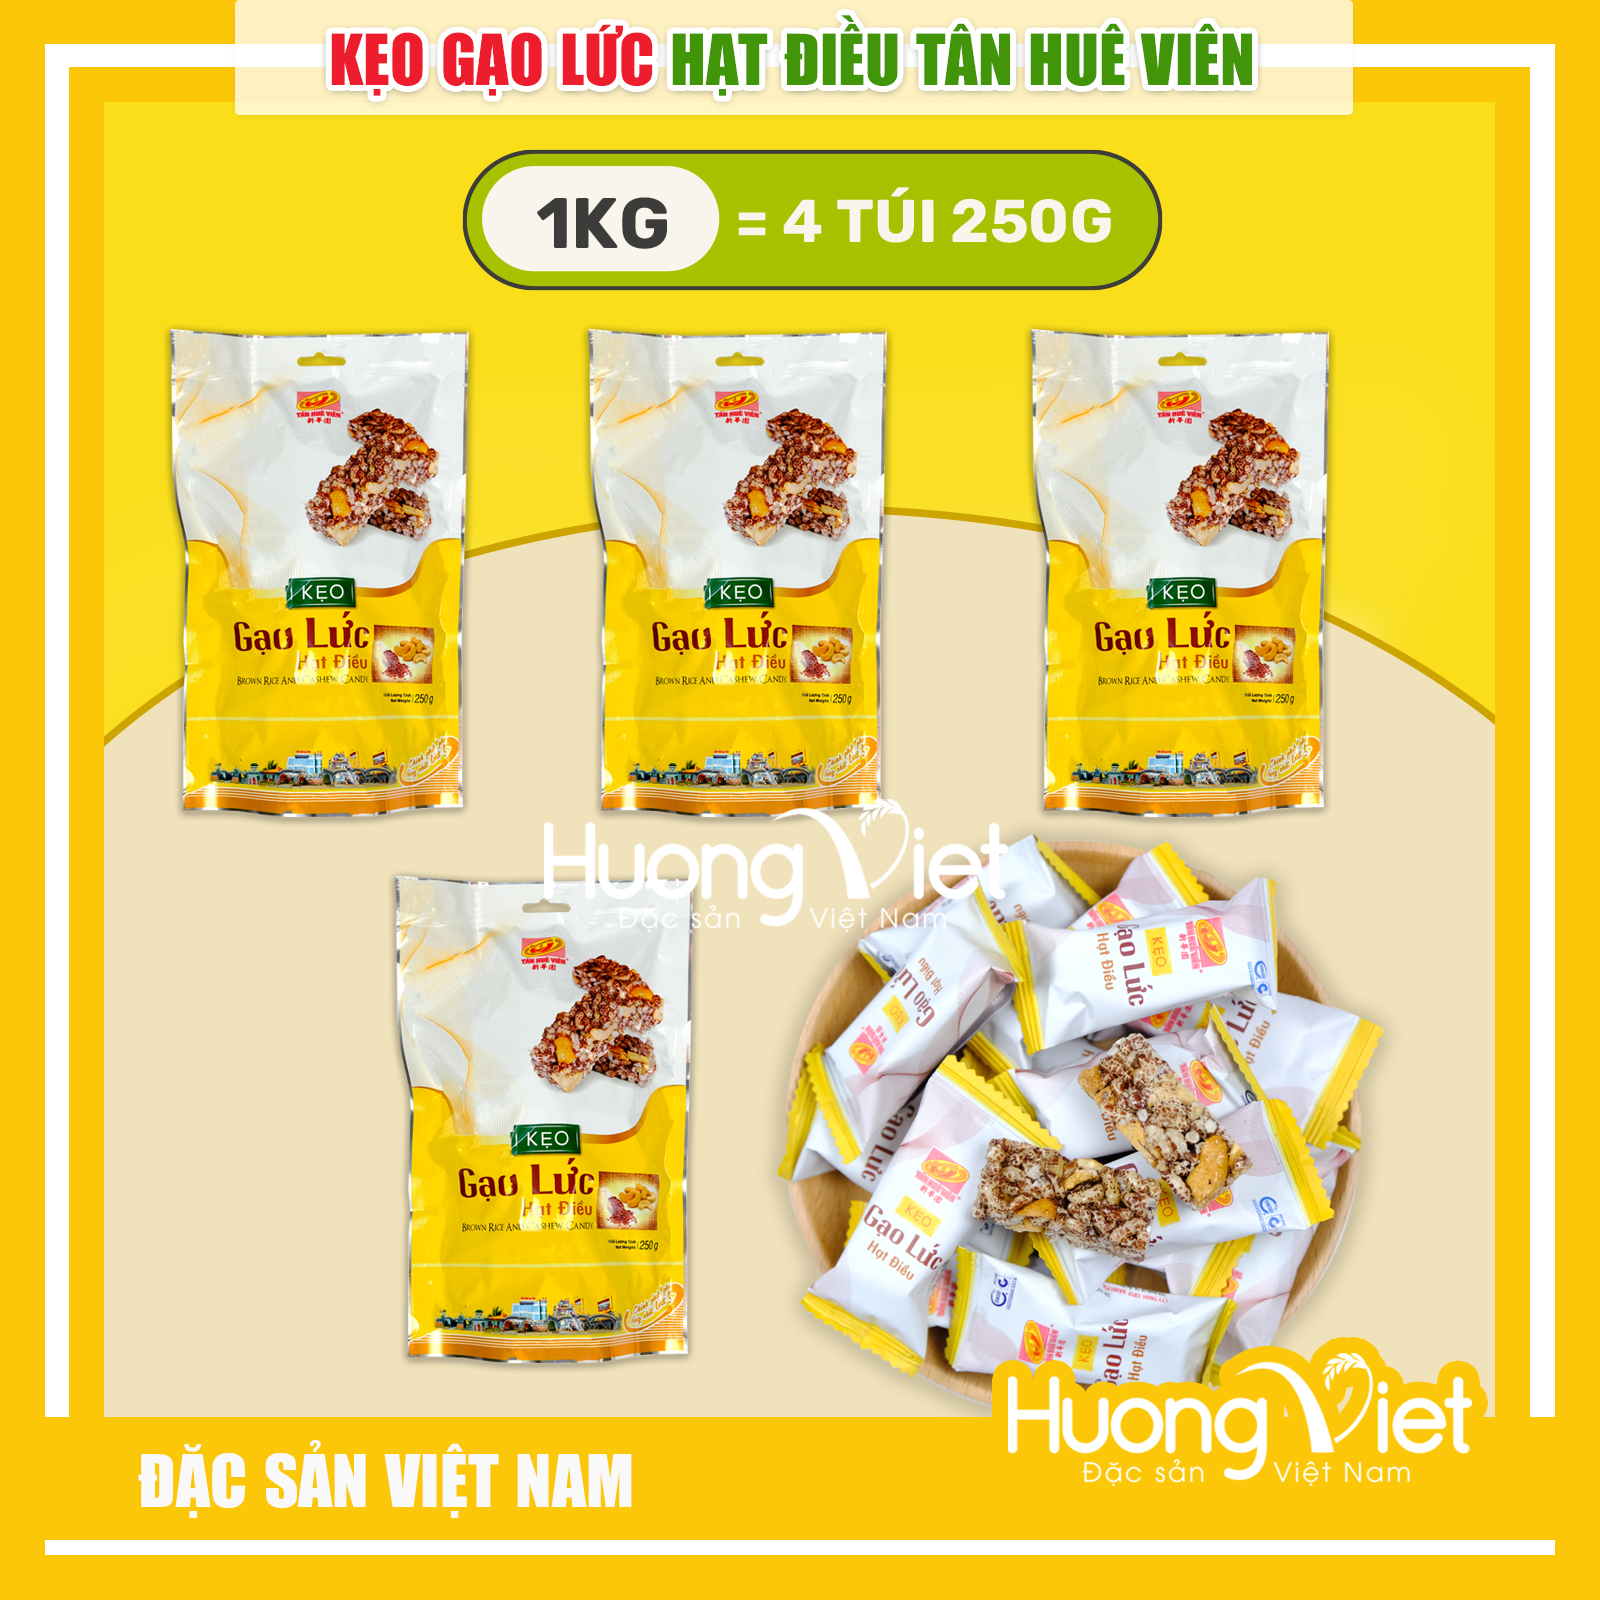 1KG kẹo gạo lức hạt điều cao cấp Tân Huê Viên 250g